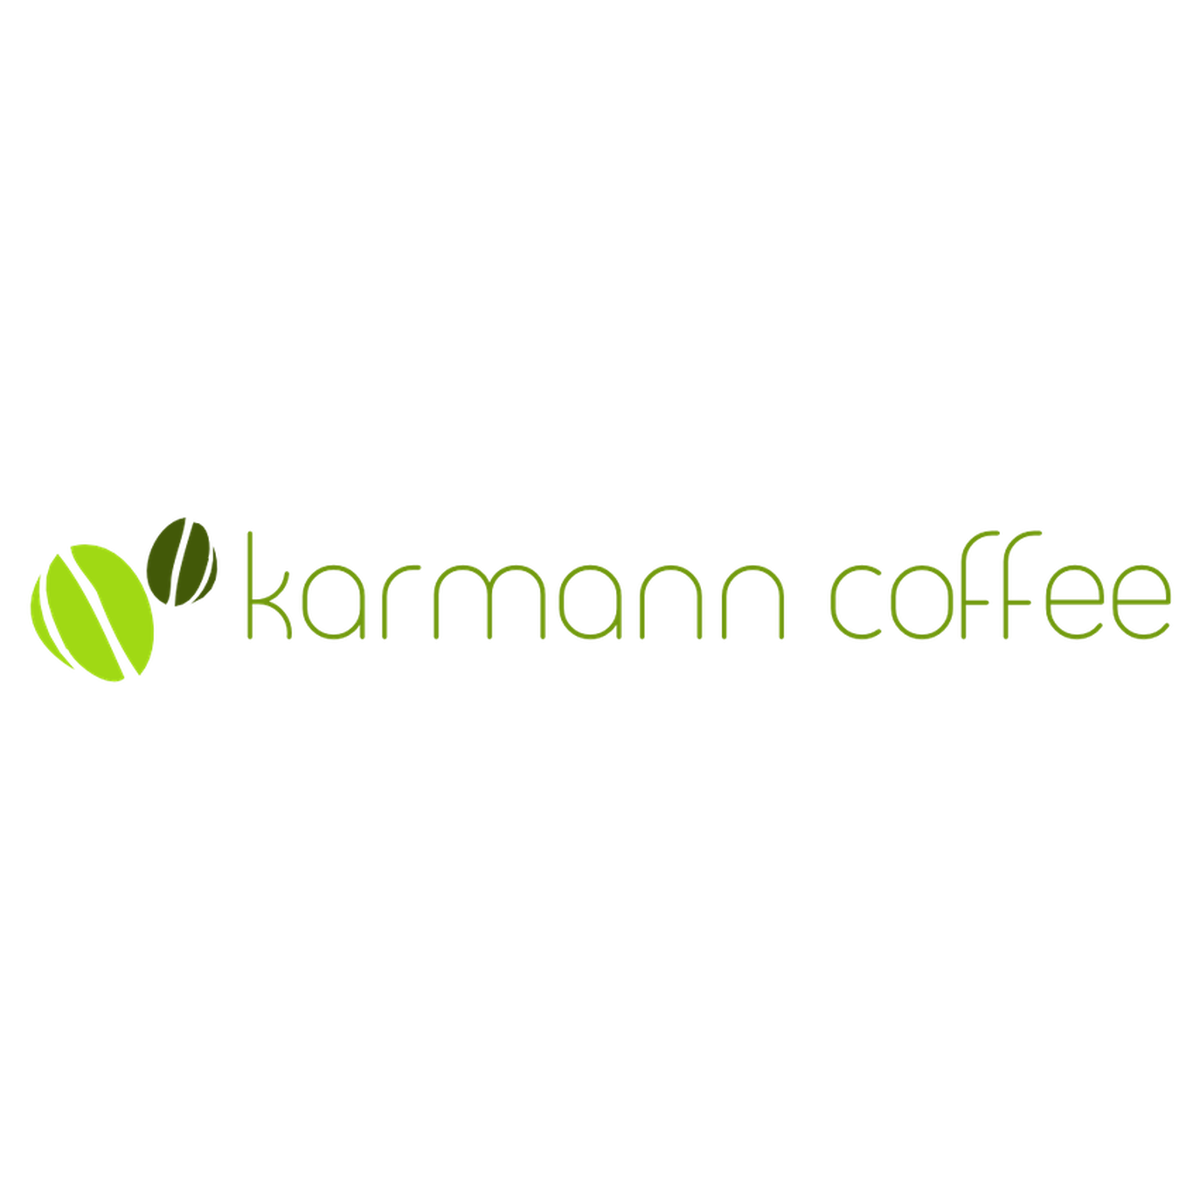 焙煎について Karmann Coffee